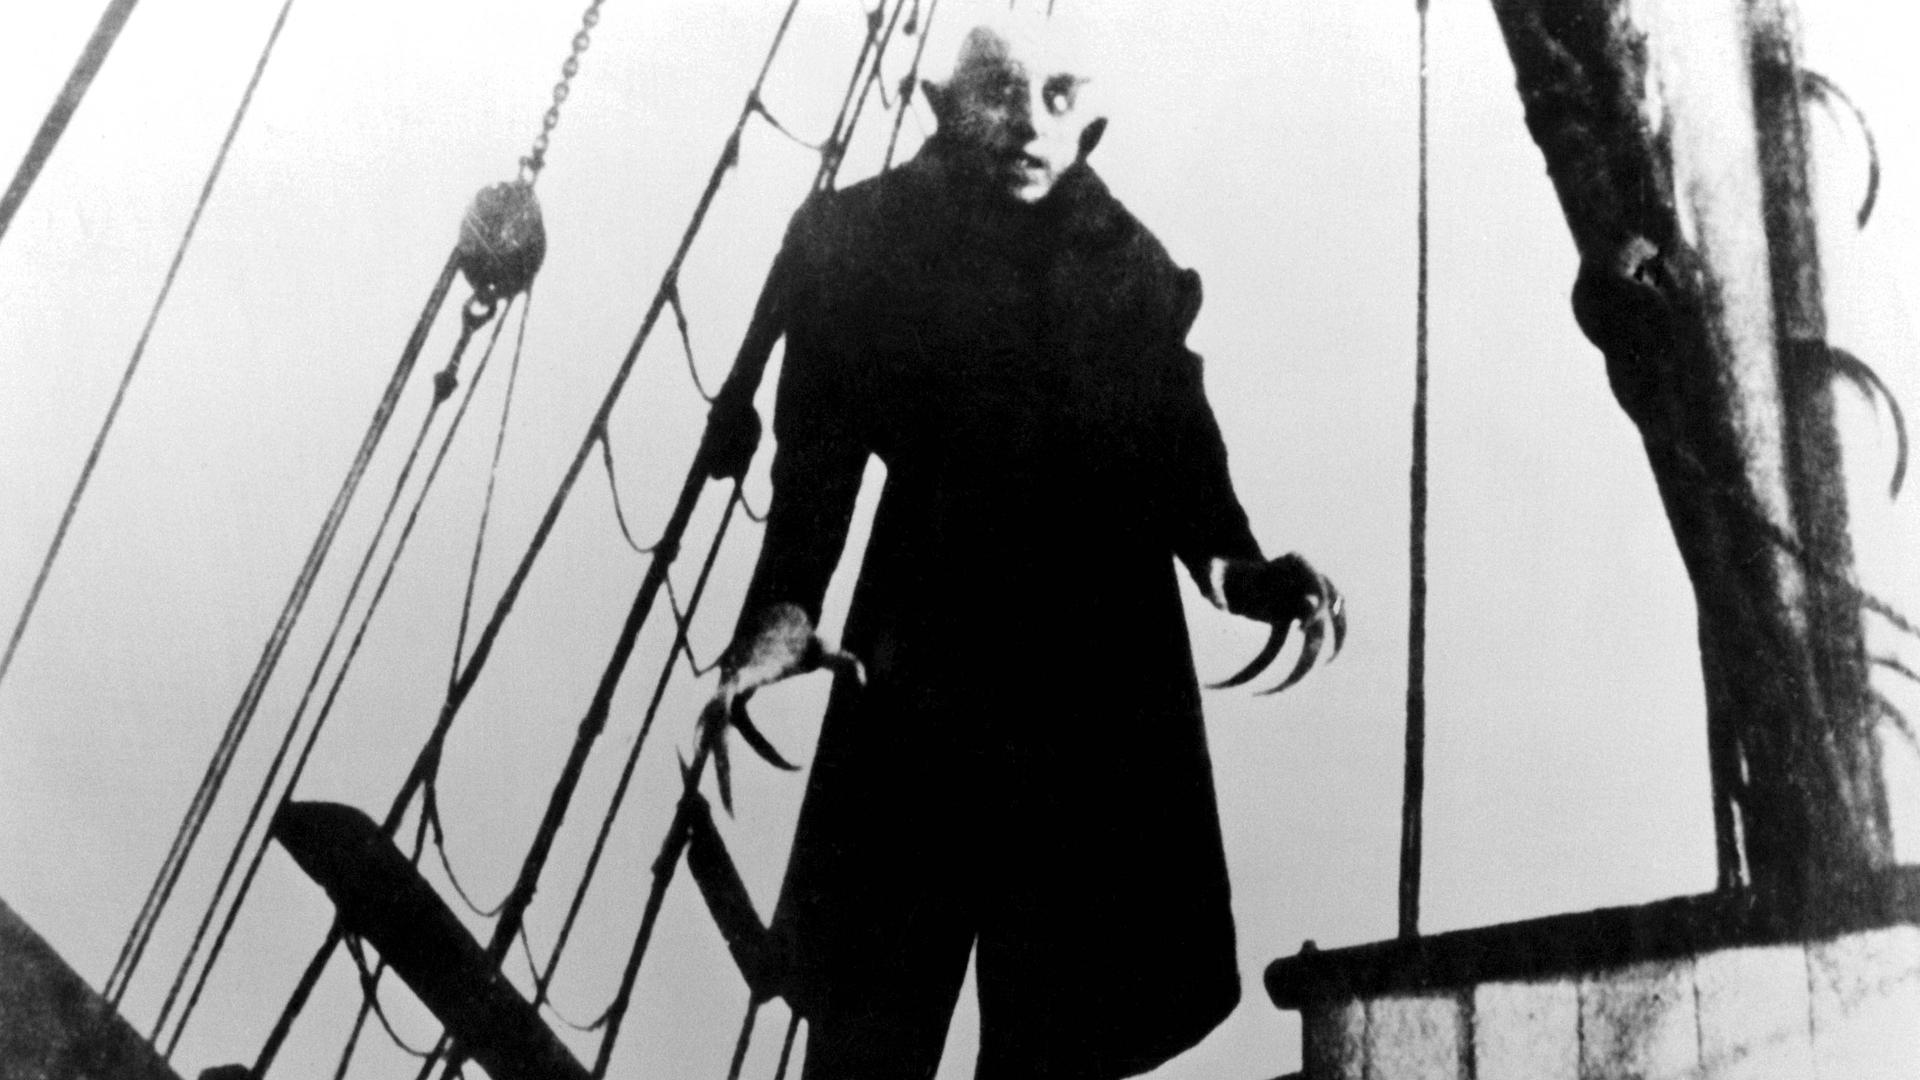 Schwarz-weiß-Bild des Films "Nosferatu", es zeigt einen Vampir mit langen Fingernägeln.